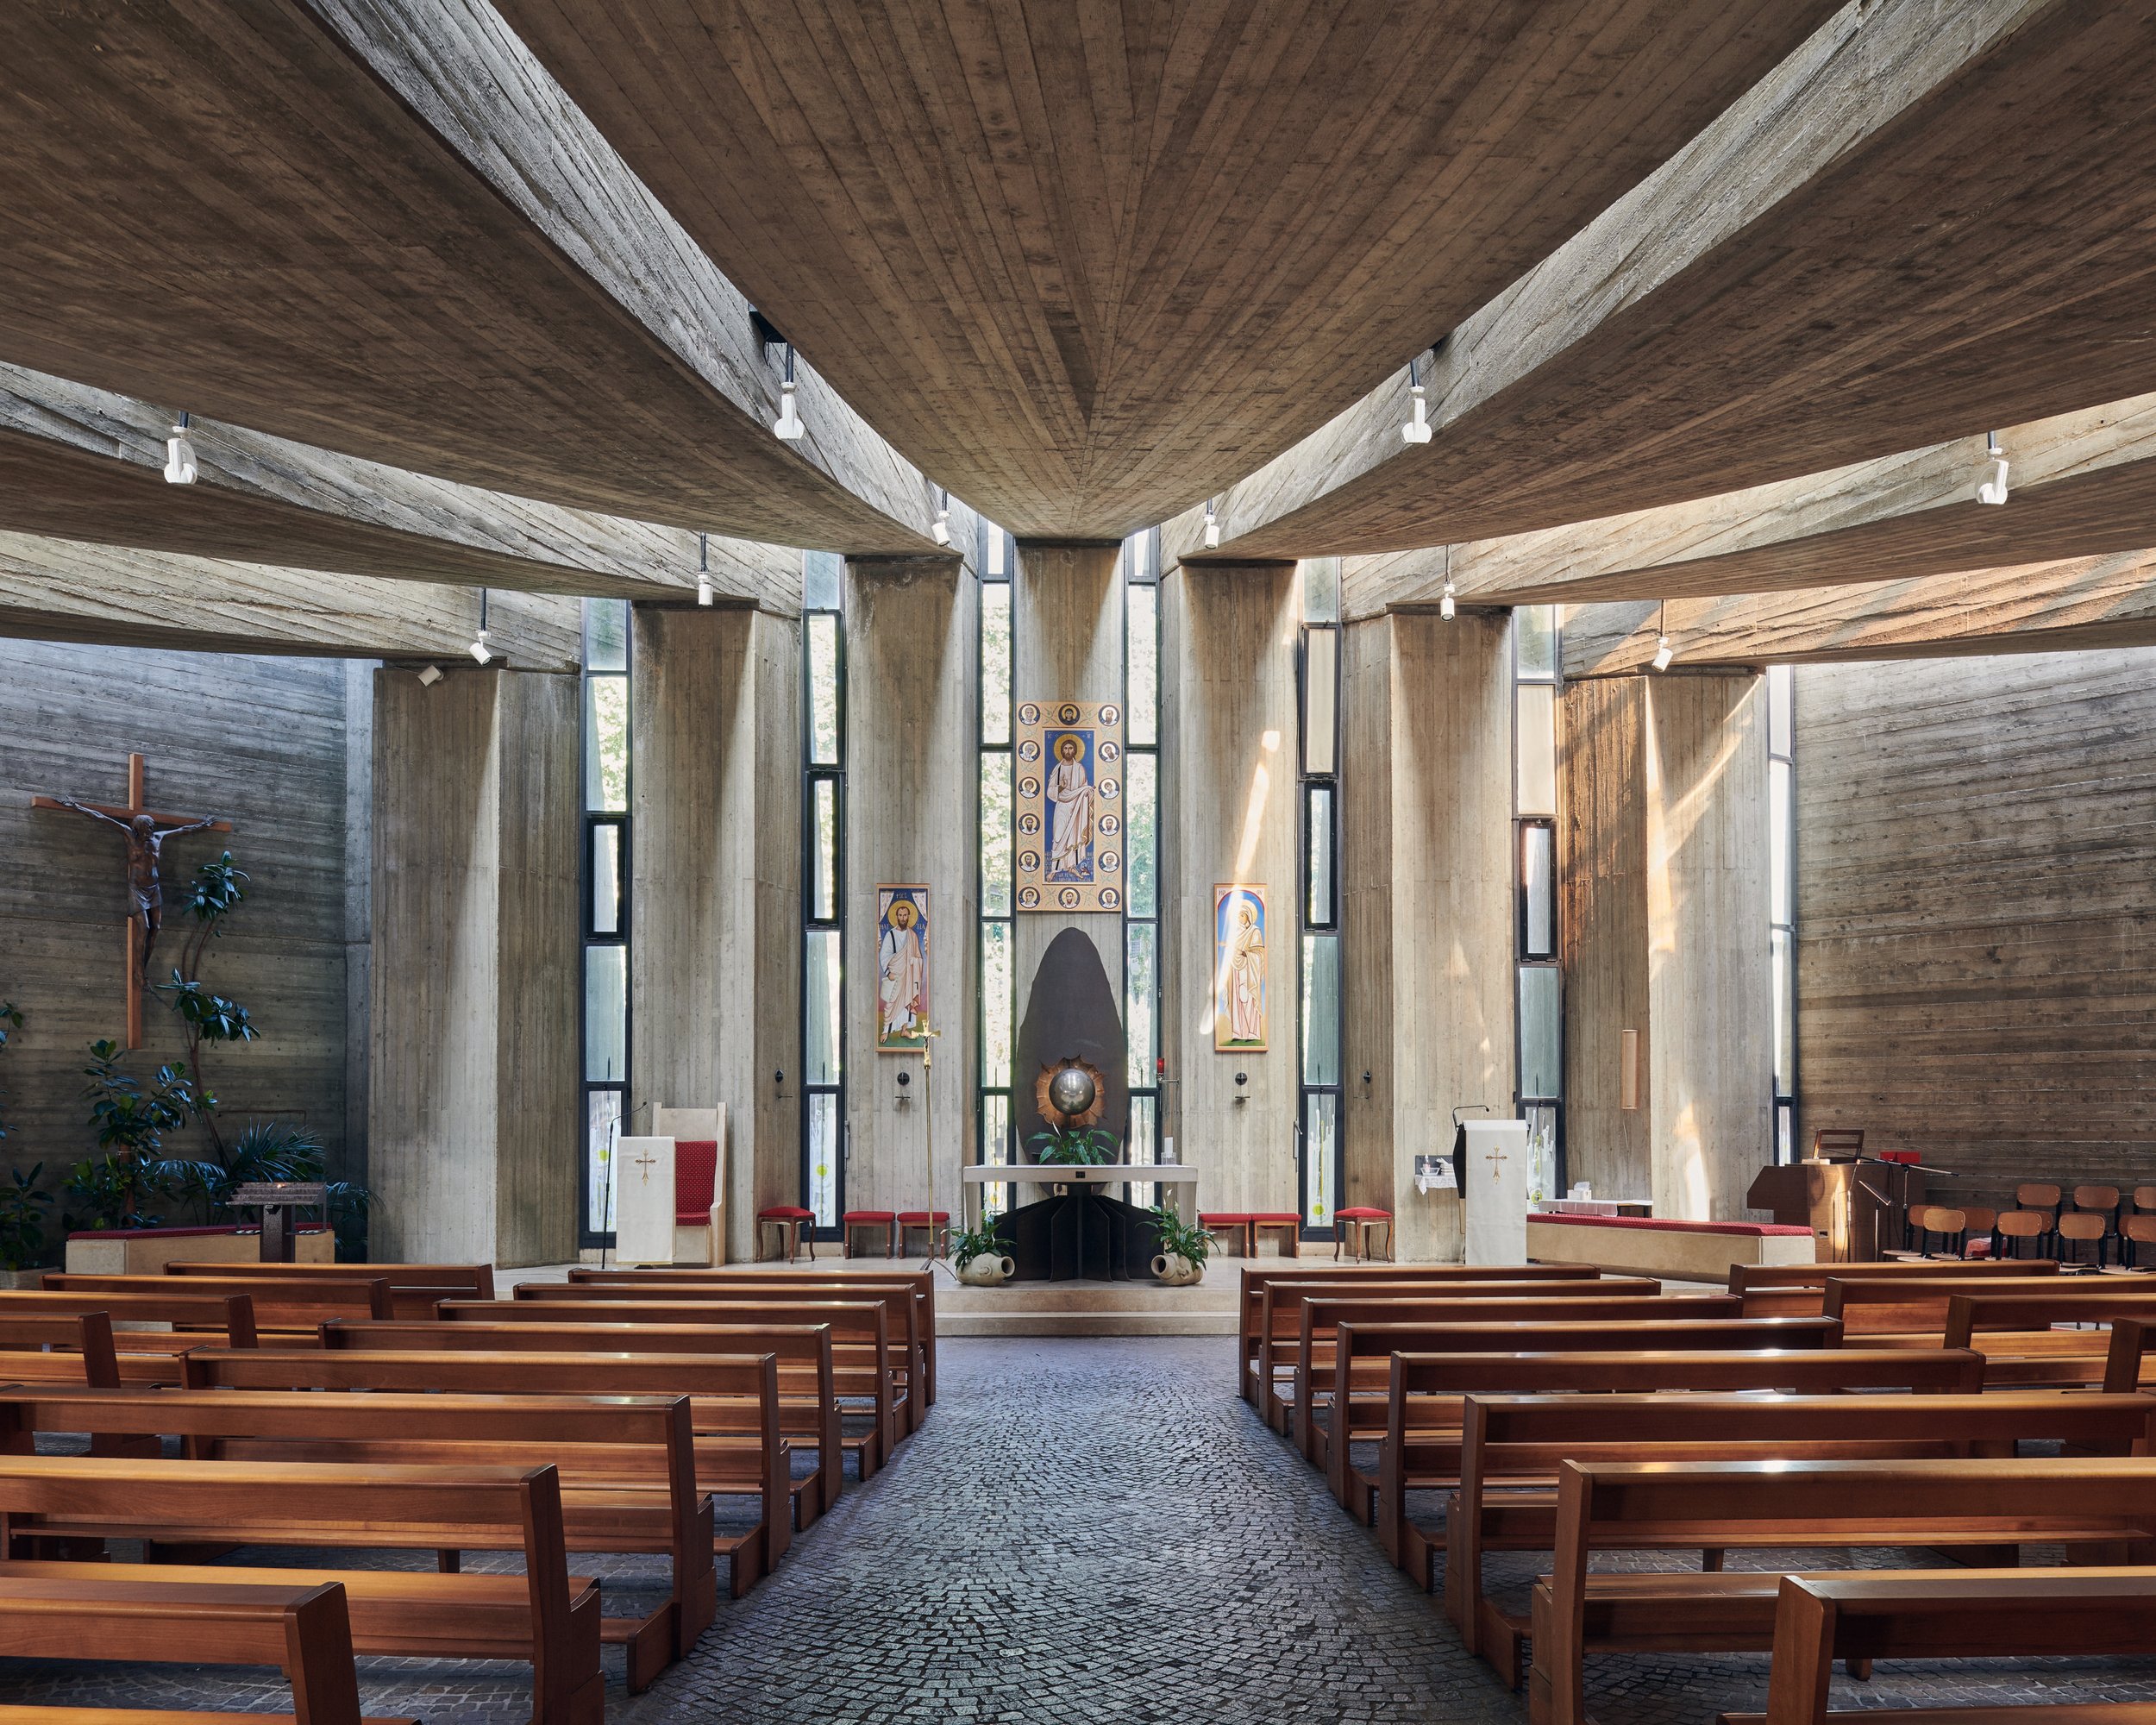 Chiesa di San Mattia - Rome, Italy - Ignazio Breccia Fratadocchi, 1976-1980